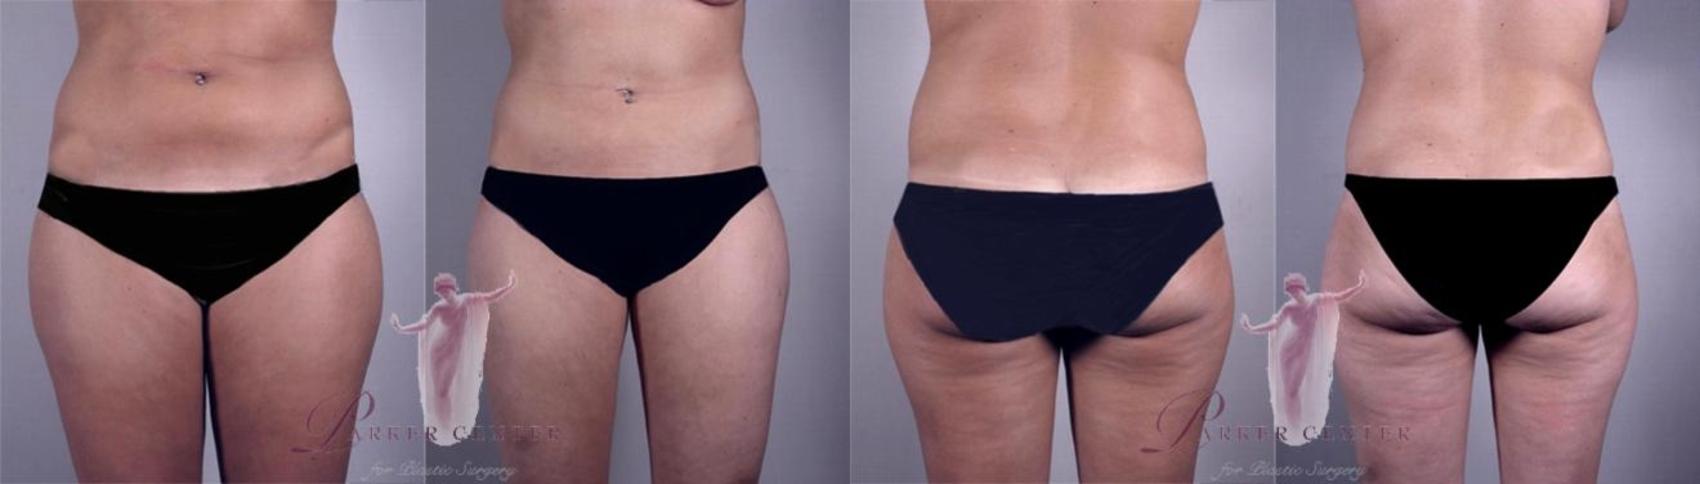 Liposuction Case 1155 Before & After Front | Paramus, NJ | Parker Center for Plastic Surgery